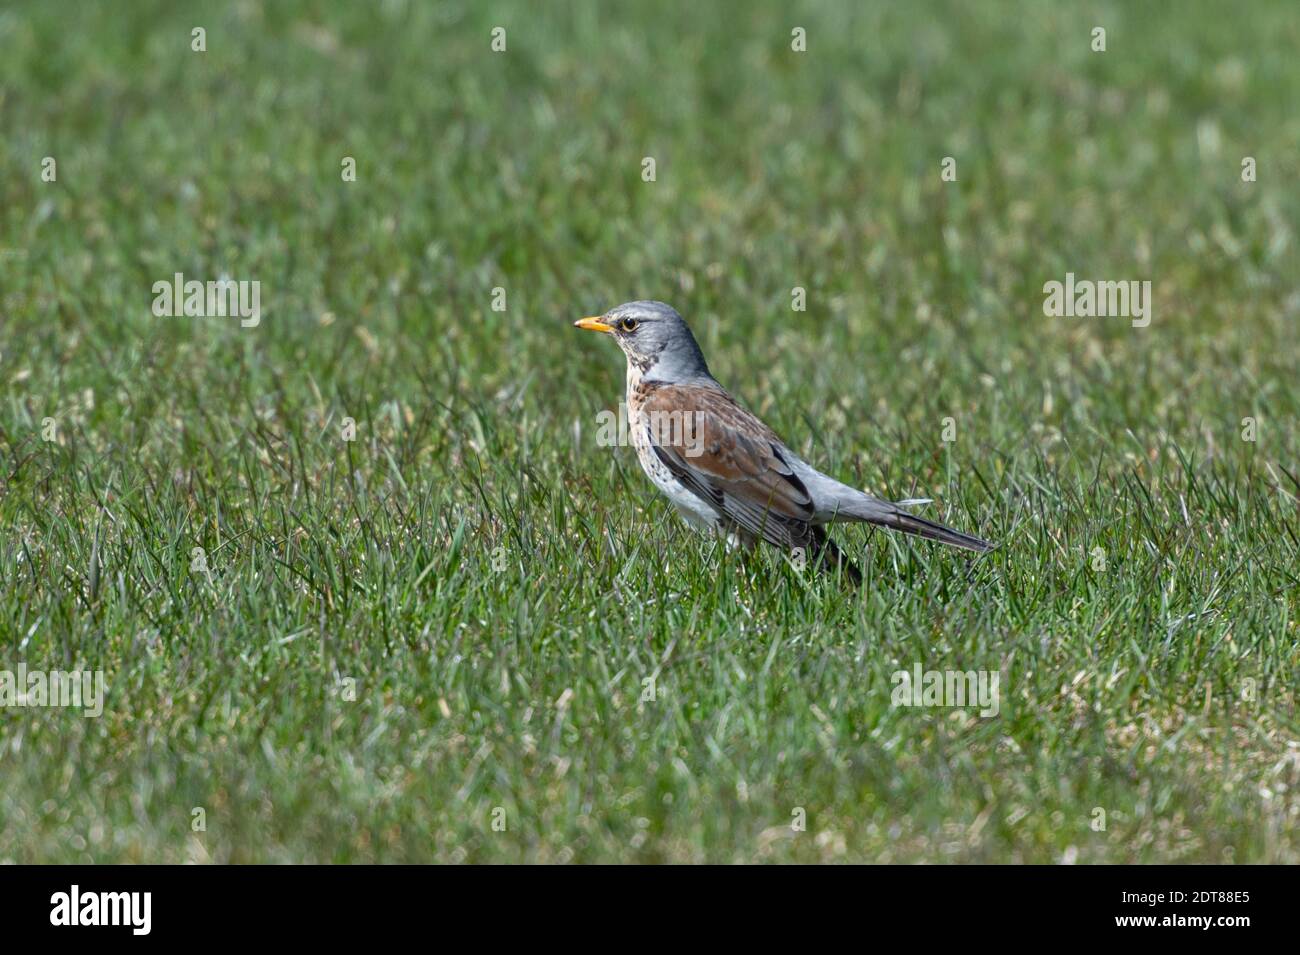 Bird Perching On A Grass Stock Photo